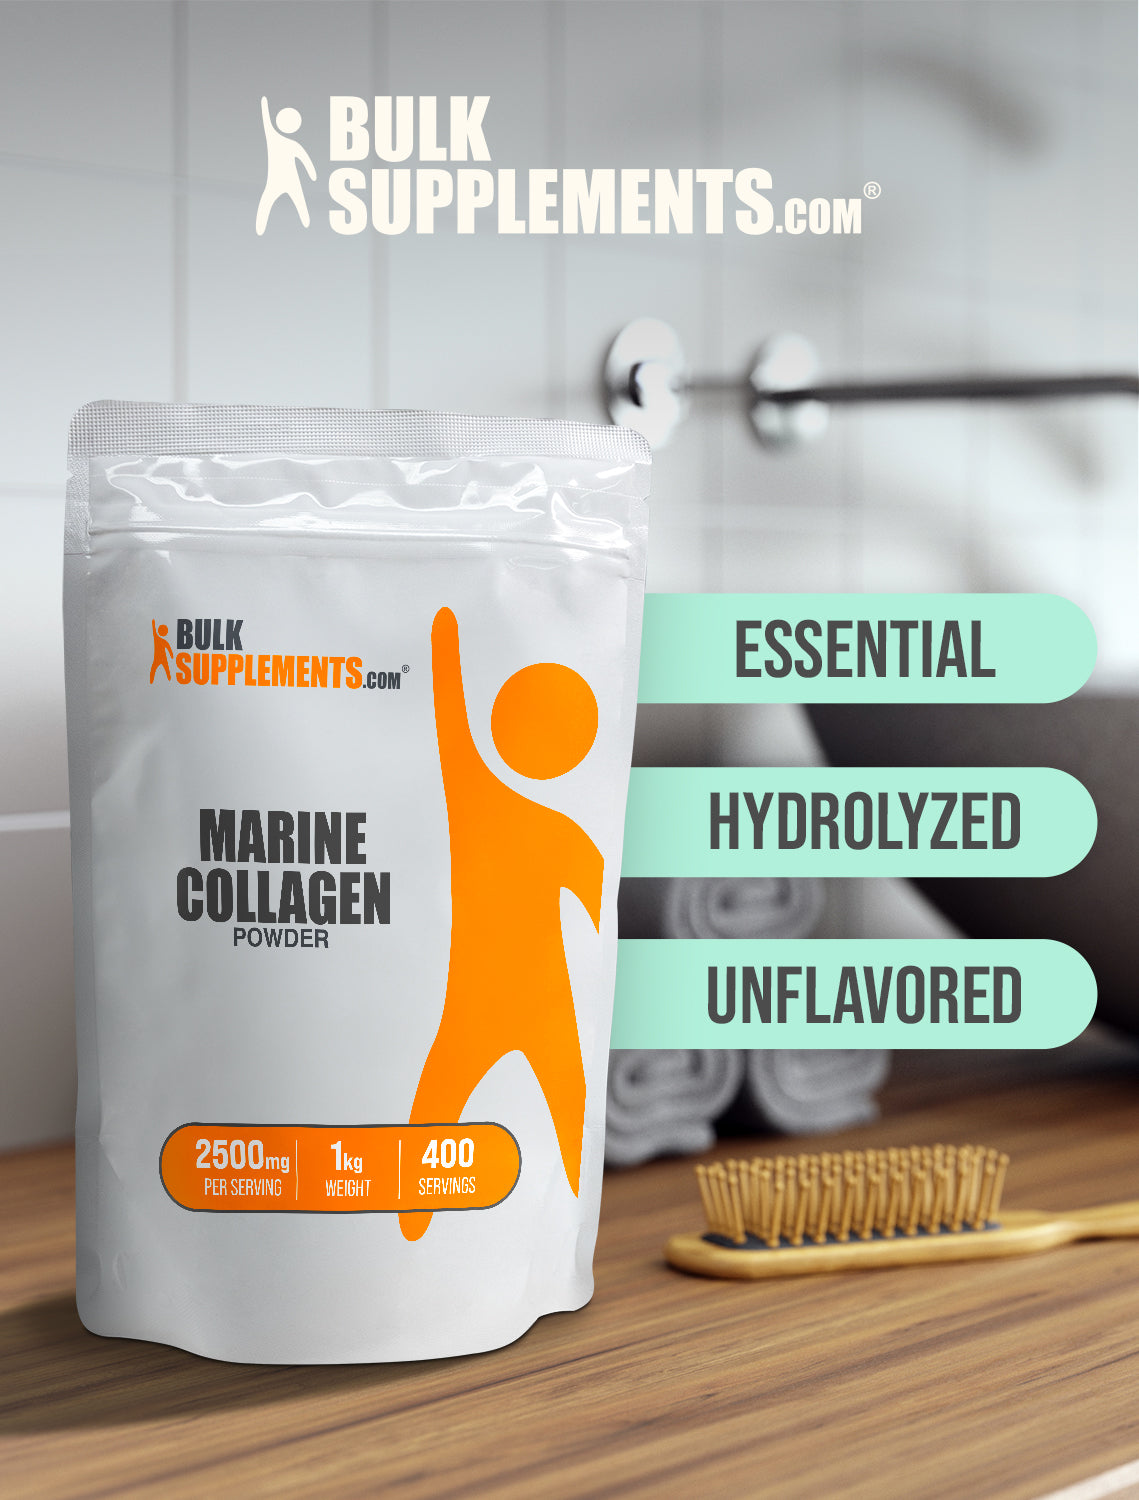 Marine collagen powder 1kg keywords image